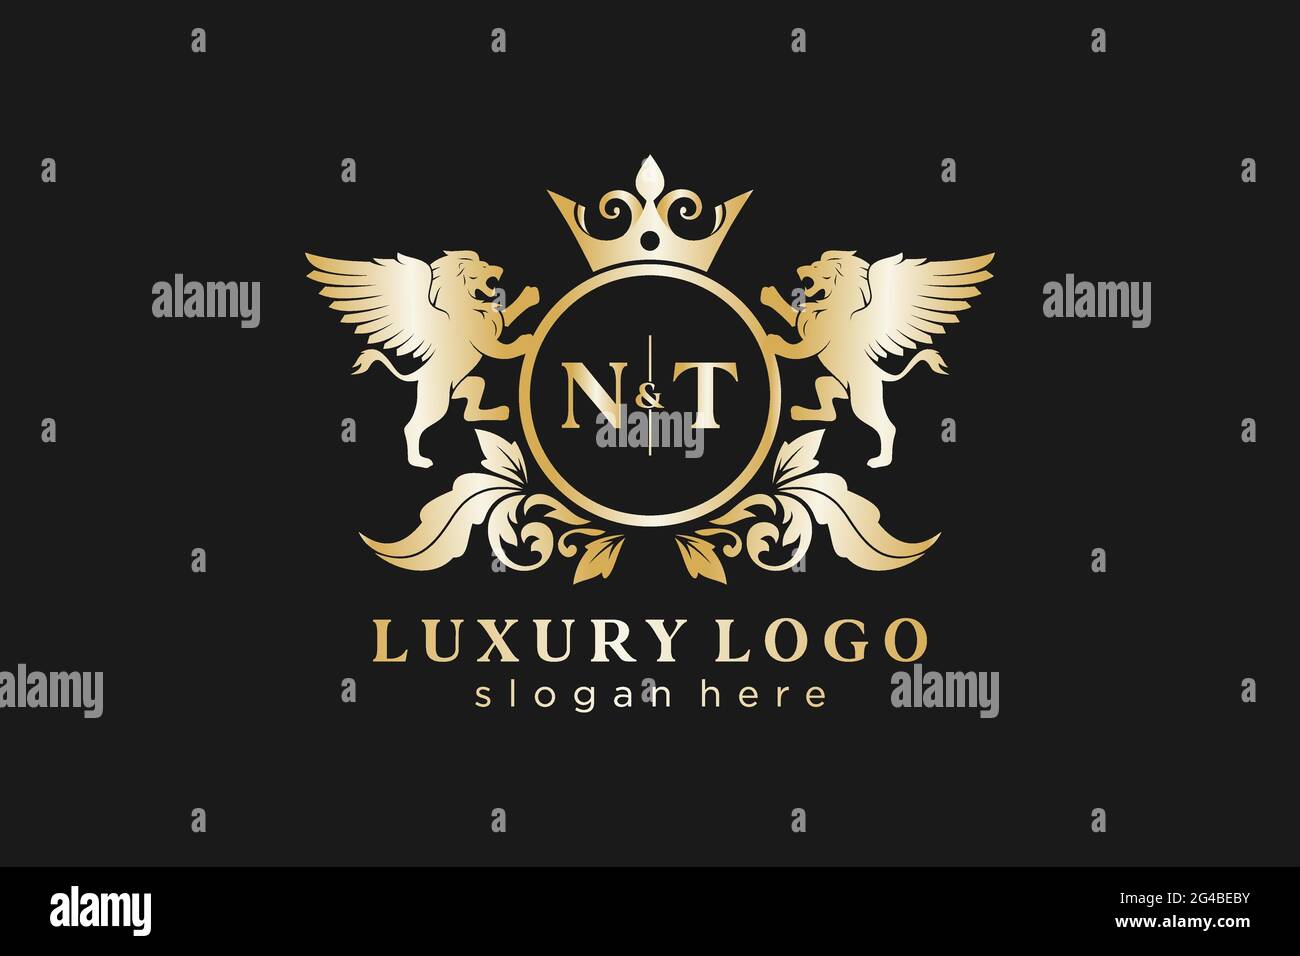 NT Letter Lion Royal Luxury Logo Vorlage in Vektorgrafik für Restaurant, Royalty, Boutique, Cafe, Hotel, Wappentisch, Schmuck, Mode und andere Vektor il Stock Vektor